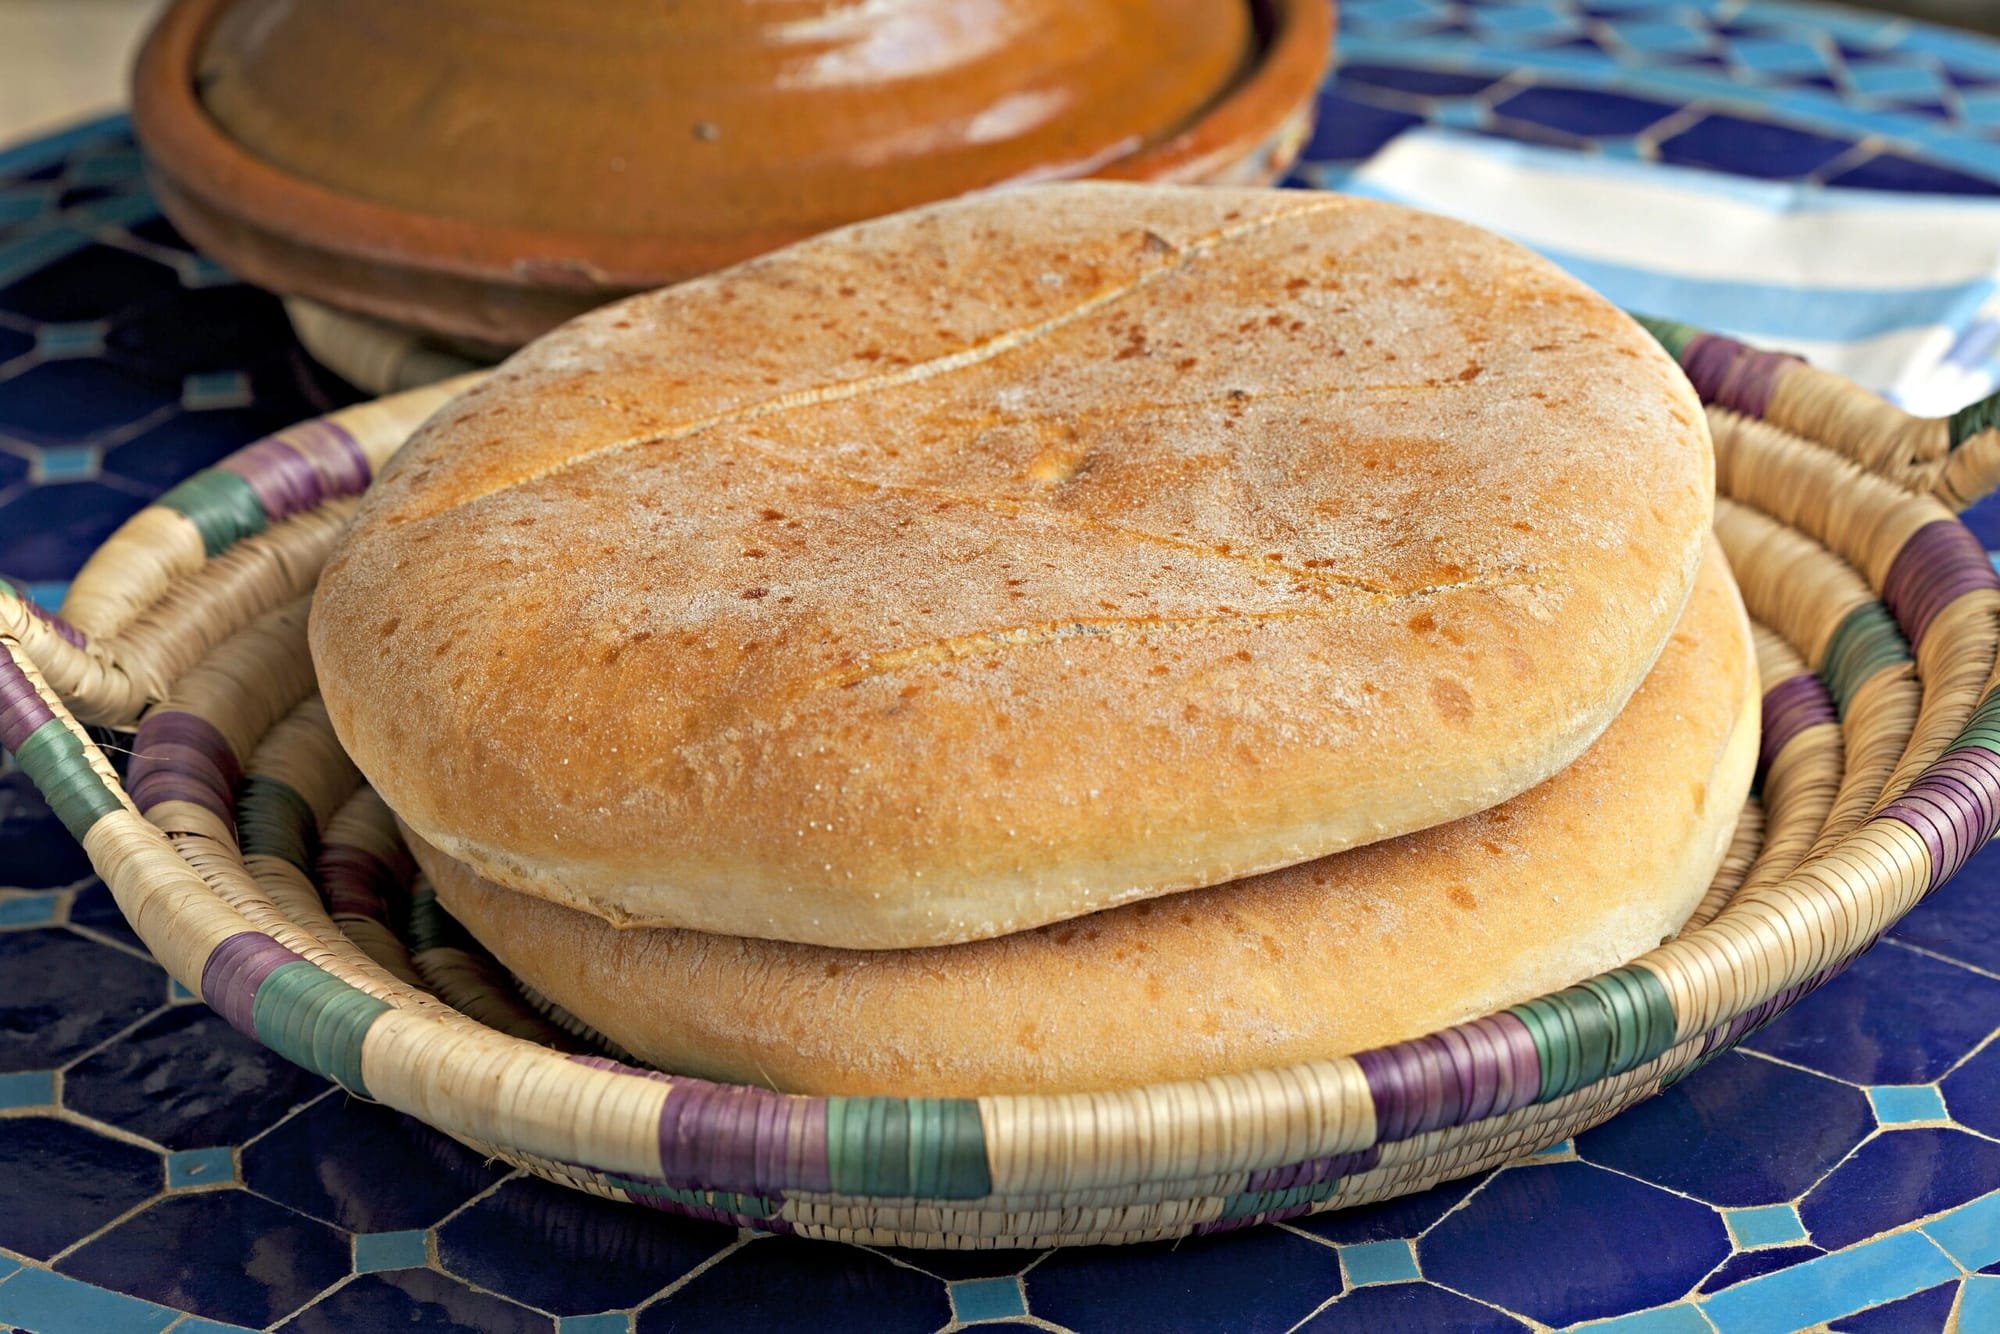 جدل في المغرب بسبب "جودة الخبز".. وفيدرالية المخابز ترد